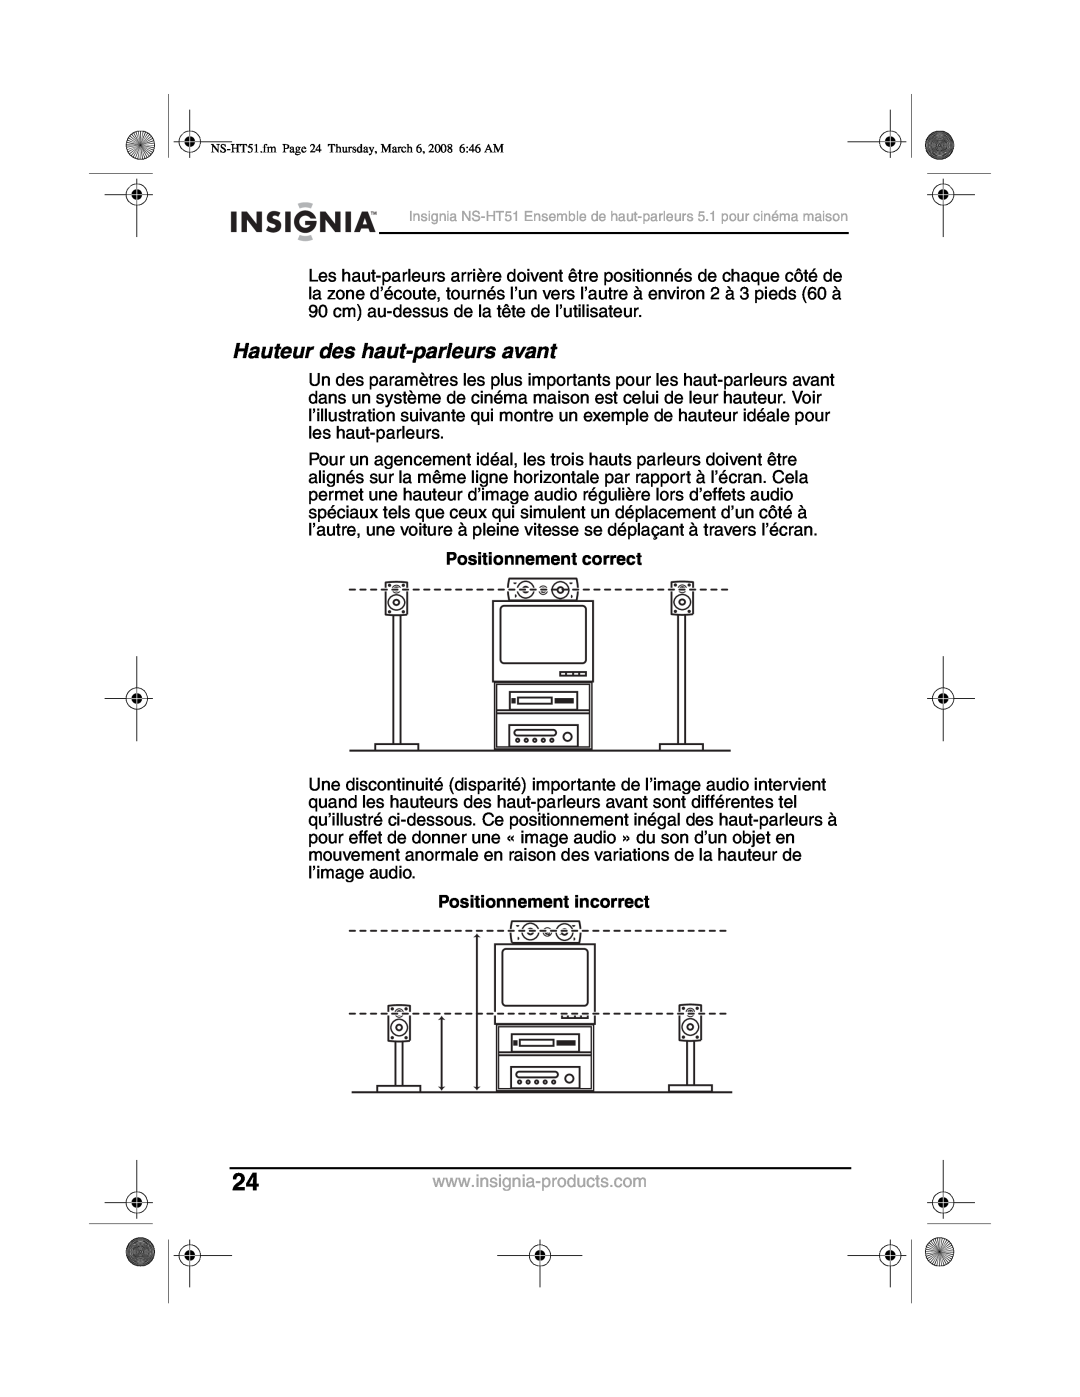 Insignia NS-HT51 manual Hauteur des haut-parleursavant, Positionnement correct, Positionnement incorrect 